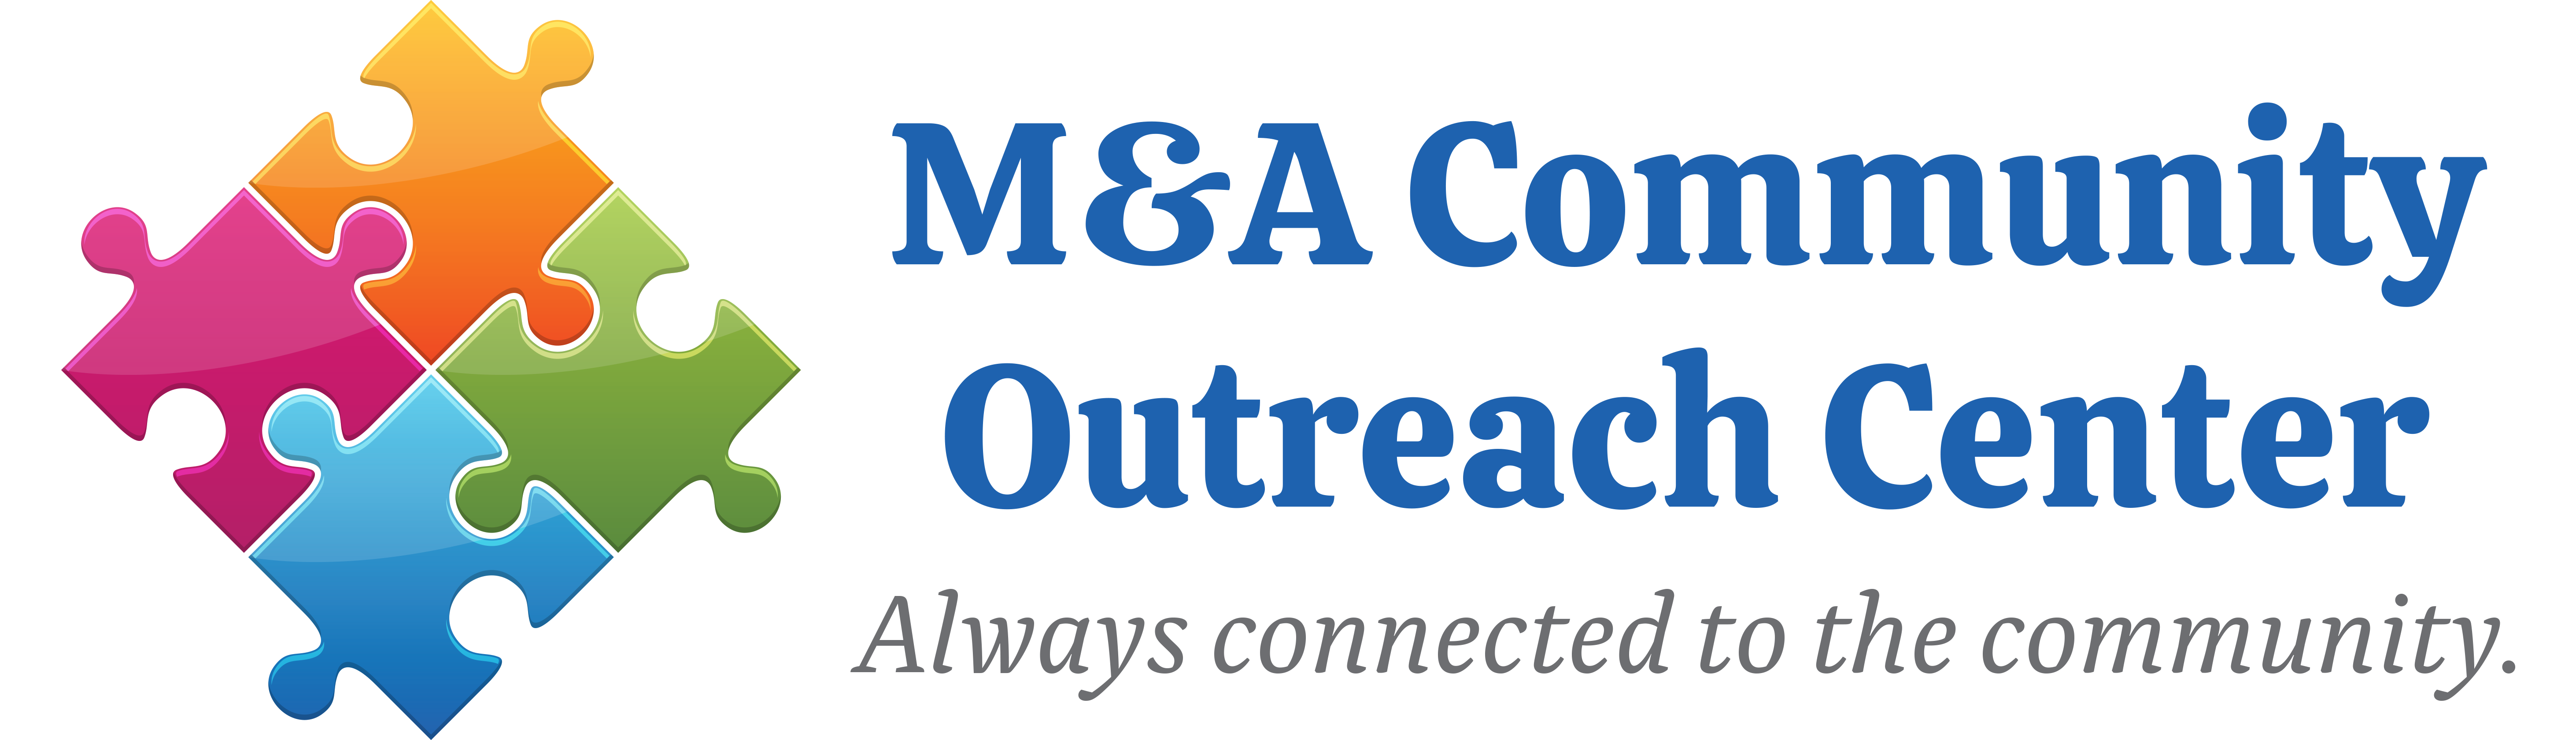 MA Community Outreach Center, Inc.